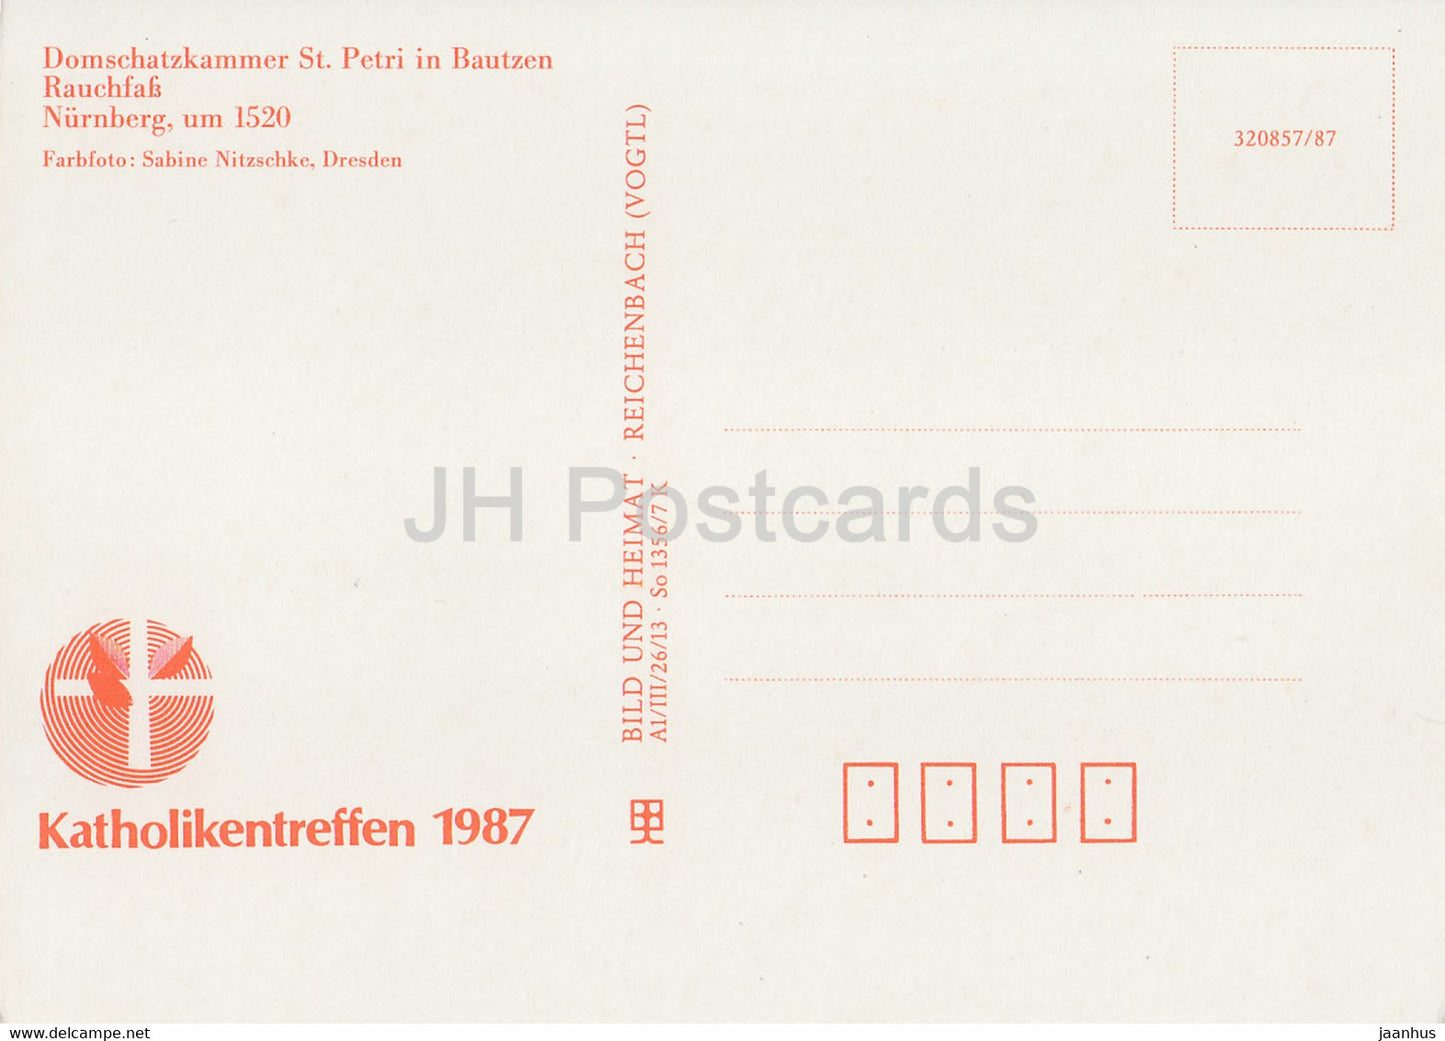 Rauchfass - Domschatzkammer St Petri in Bautzen - 1987 - DDR Germany - unused